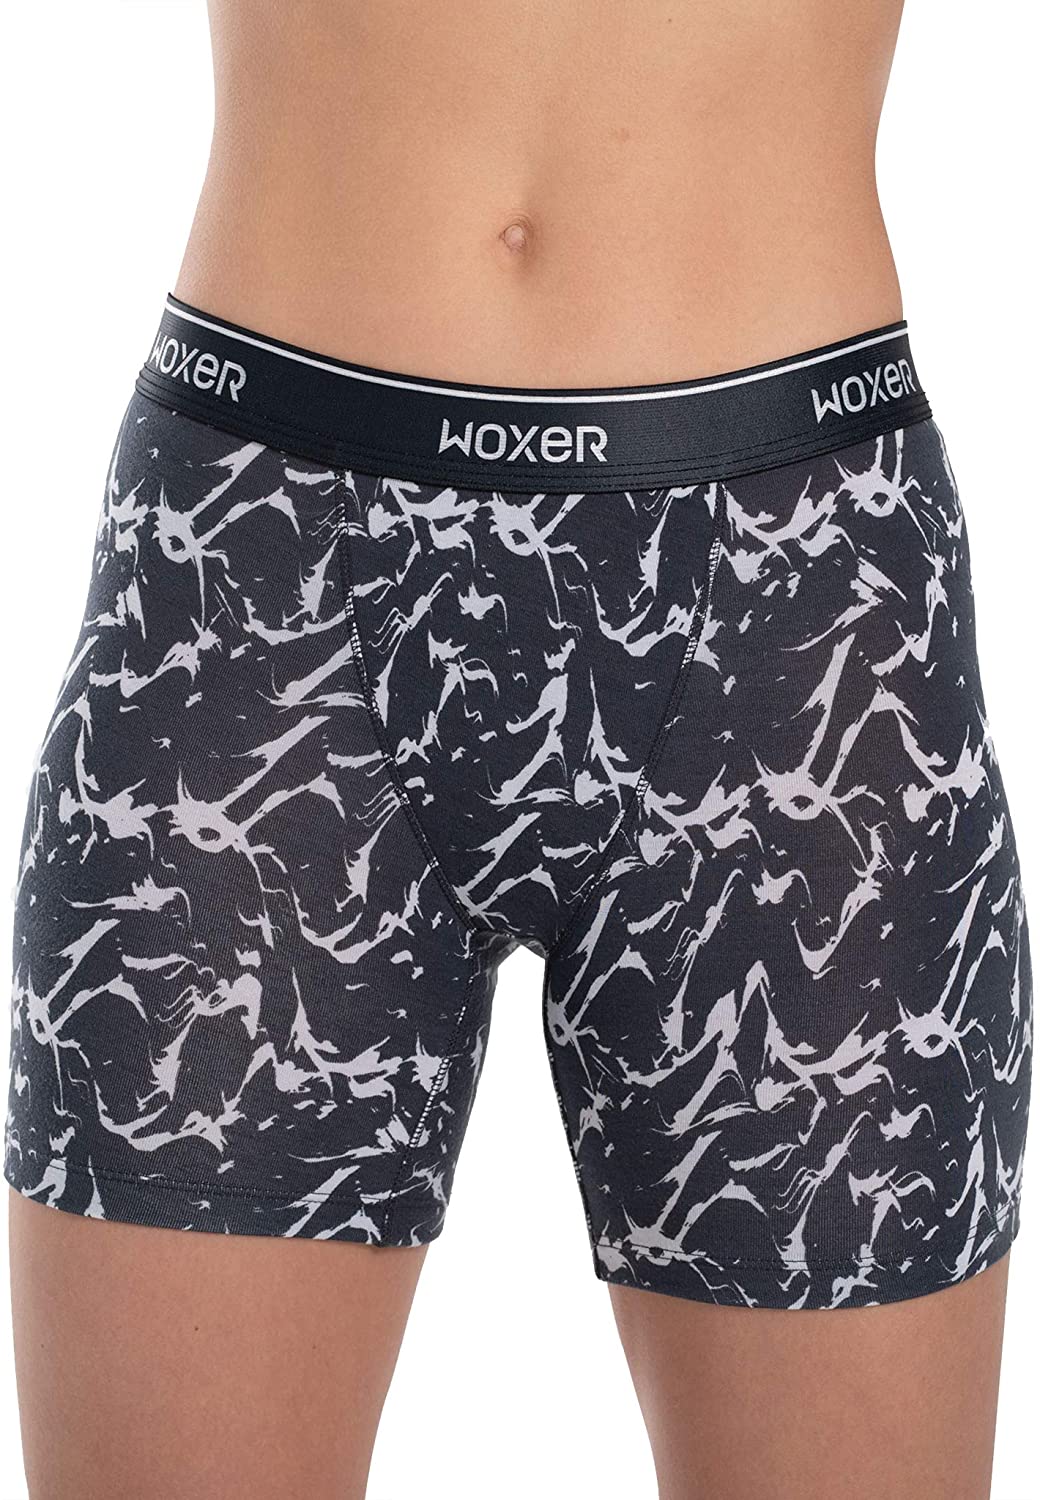 Woxer Boxer Briefs for Women Baller 5” Inseam- Underwear for Ladies